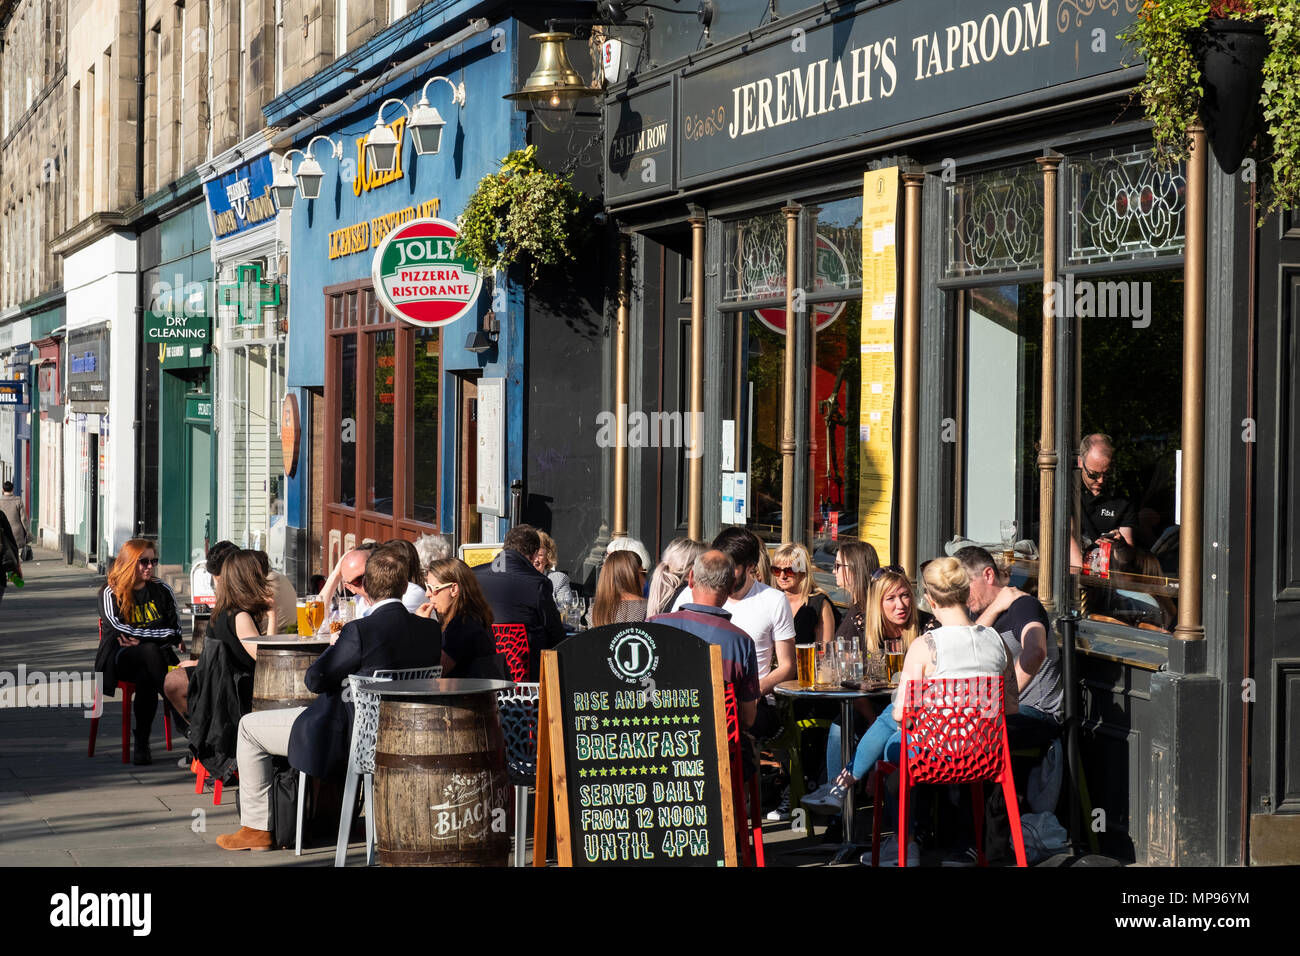 Extérieur de Jeremiah's Taproom pub avec les personnes qui boivent à l'extérieur sur chaude soirée sur Elm Row à Édimbourg, Écosse, Royaume-Uni, Royaume-Uni Banque D'Images